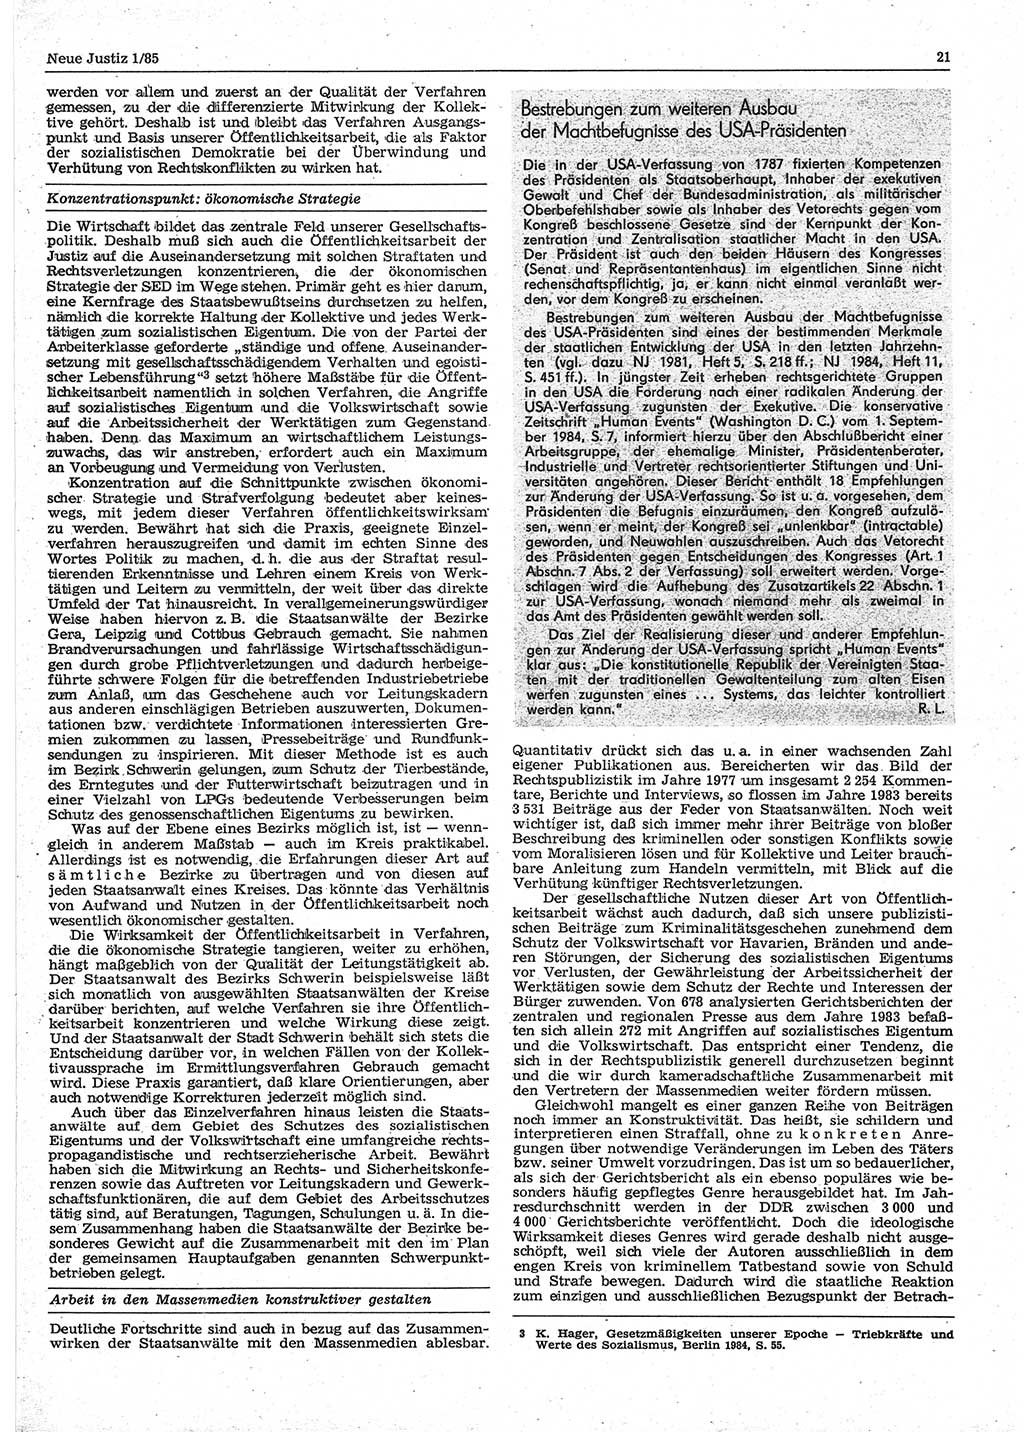 Neue Justiz (NJ), Zeitschrift für sozialistisches Recht und Gesetzlichkeit [Deutsche Demokratische Republik (DDR)], 39. Jahrgang 1985, Seite 21 (NJ DDR 1985, S. 21)